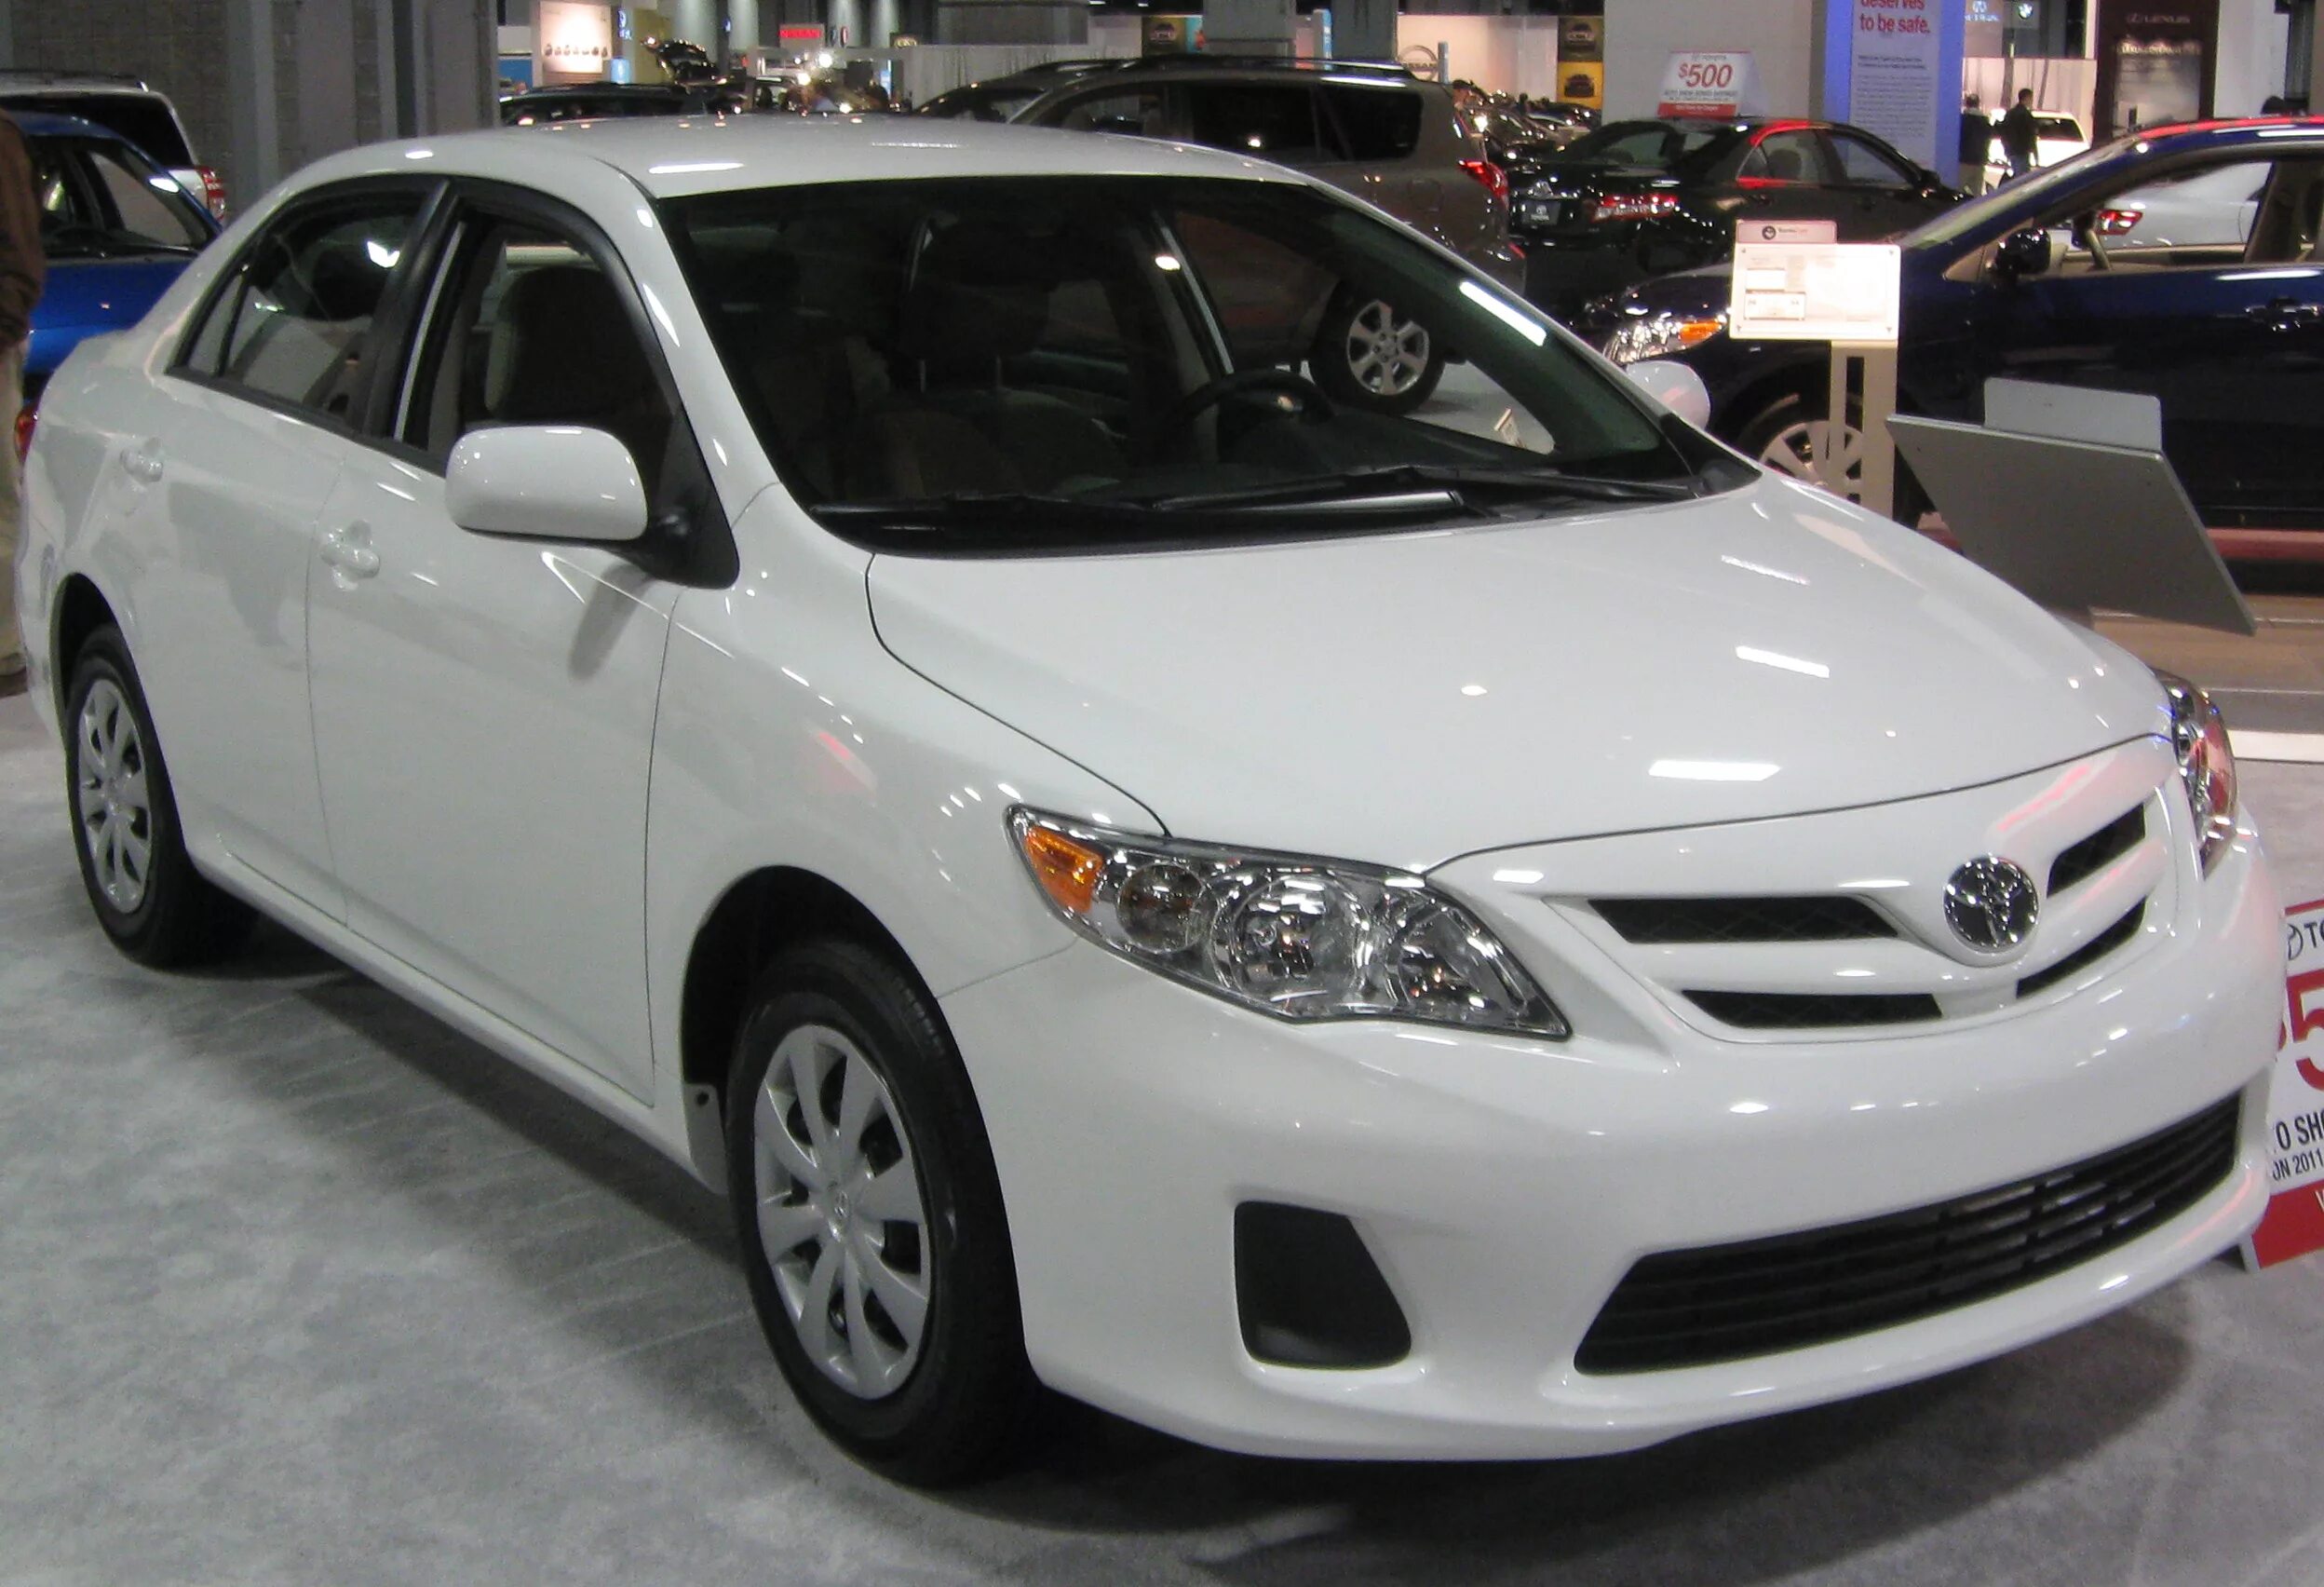 Купить королла 2011. Toyota Corolla 2011. Тойота Corolla 2011. Тойота Королла 2011 года. Toyota Corolla s 2011.